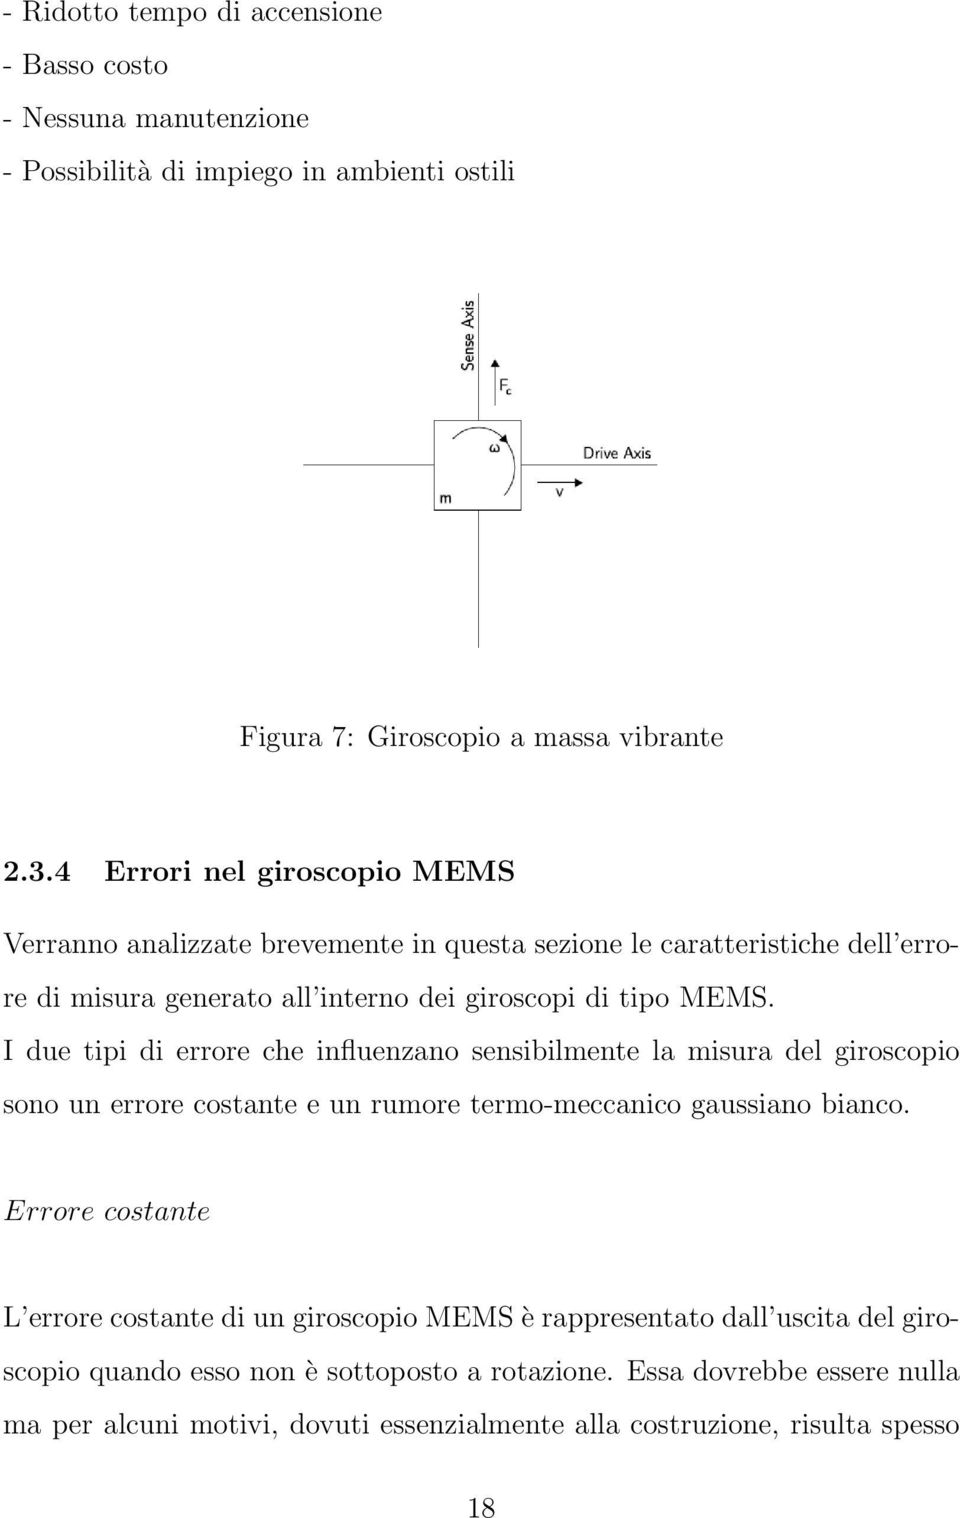 I due tipi di errore che influenzano sensibilmente la misura del giroscopio sono un errore costante e un rumore termo-meccanico gaussiano bianco.